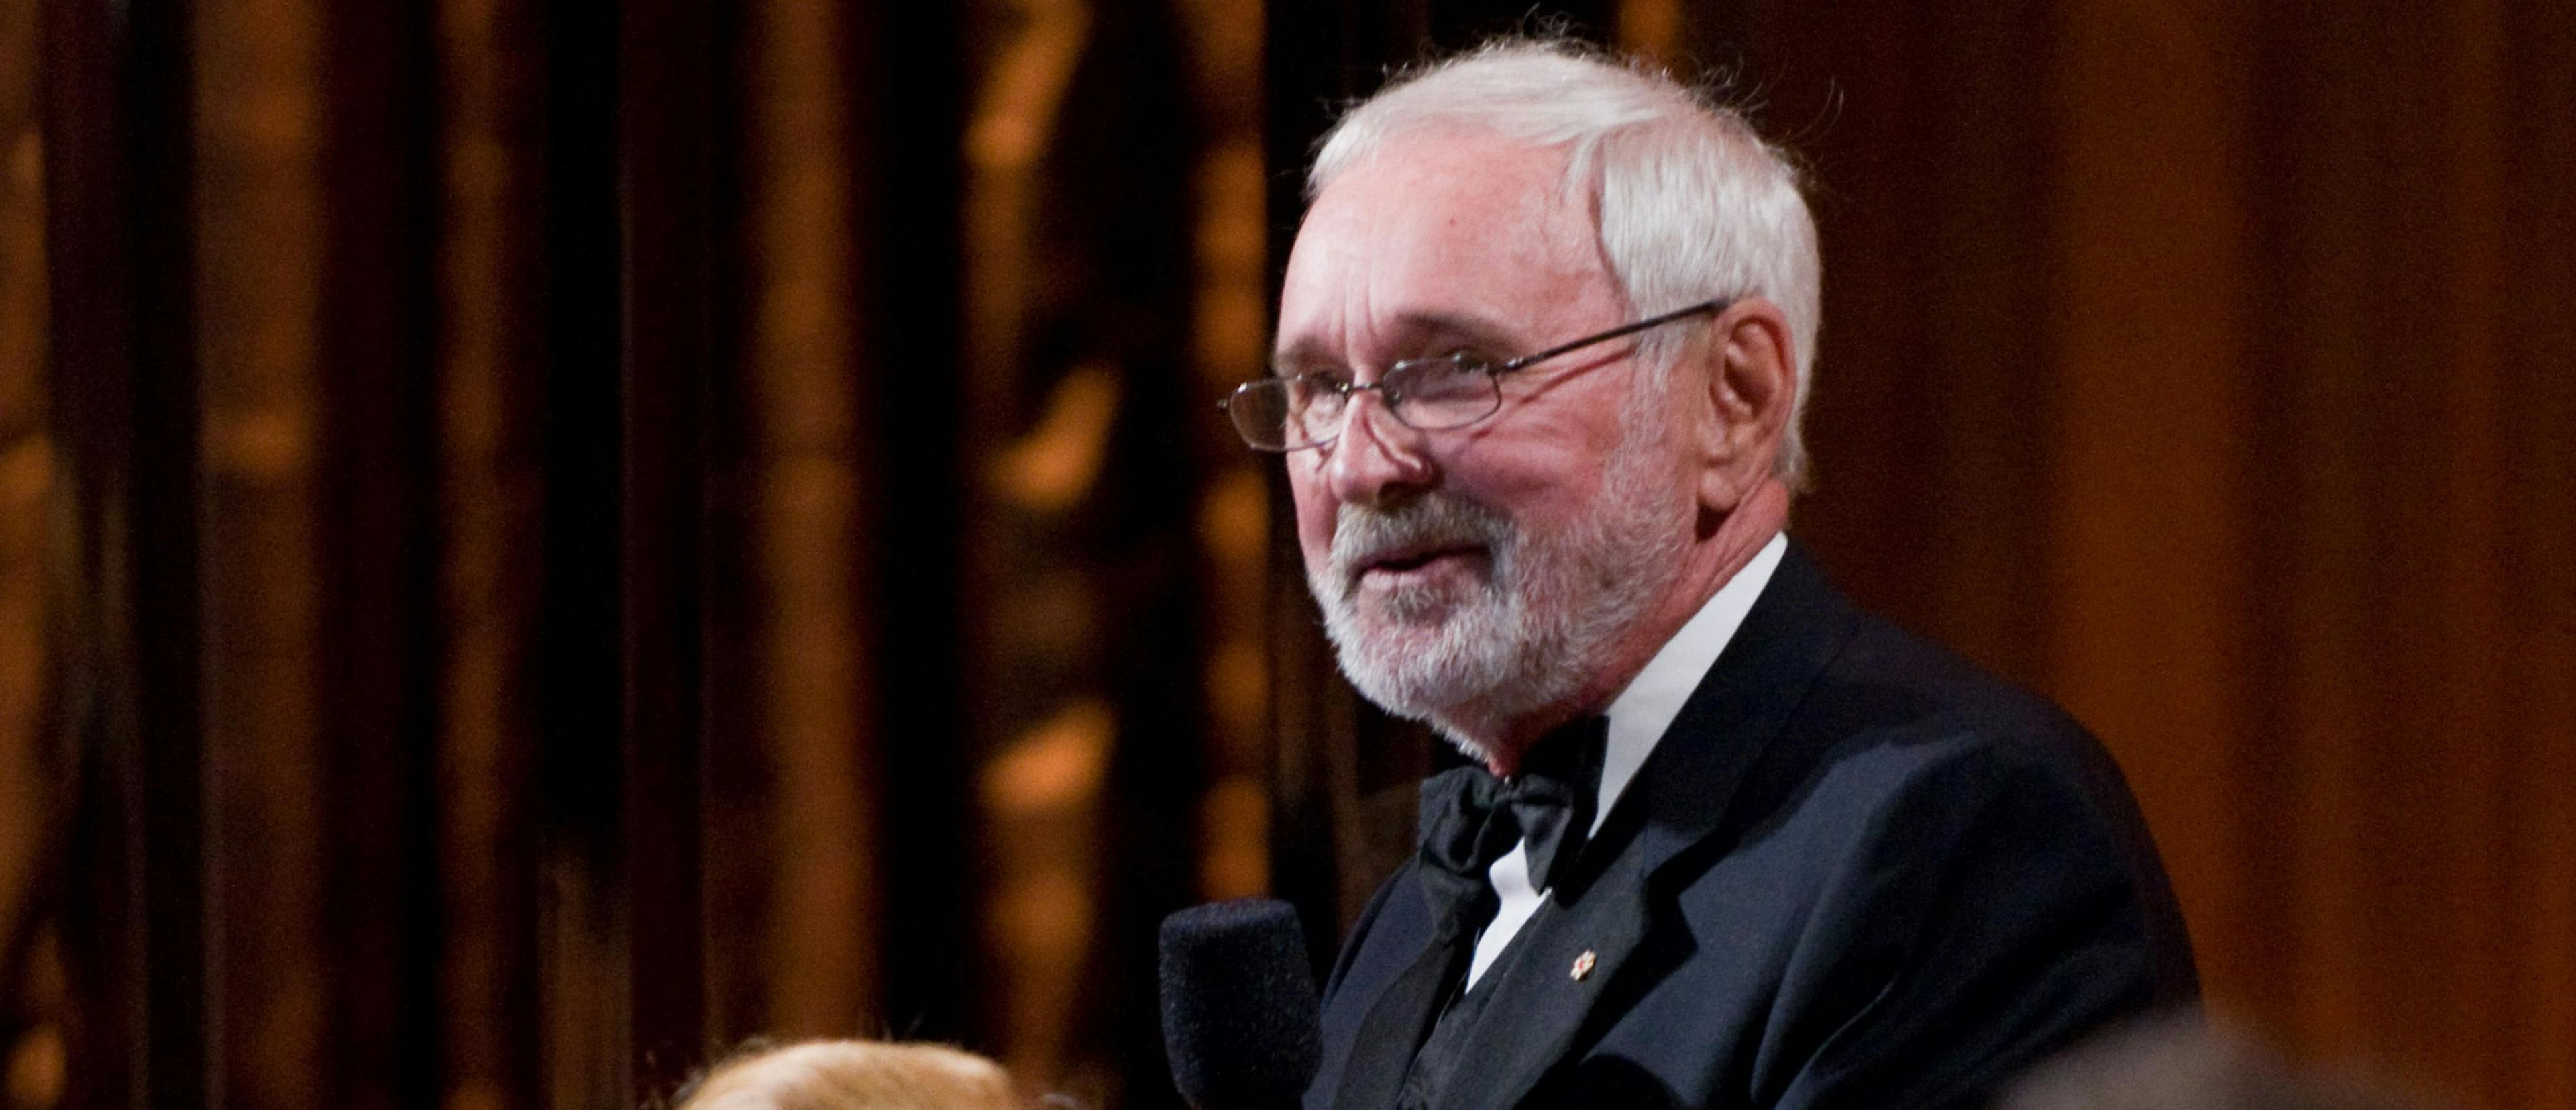 El director Norman Jewison, fallecido este lunes a los 97 años de edad, durante la gala de entrega de los Governors Awards de 2009